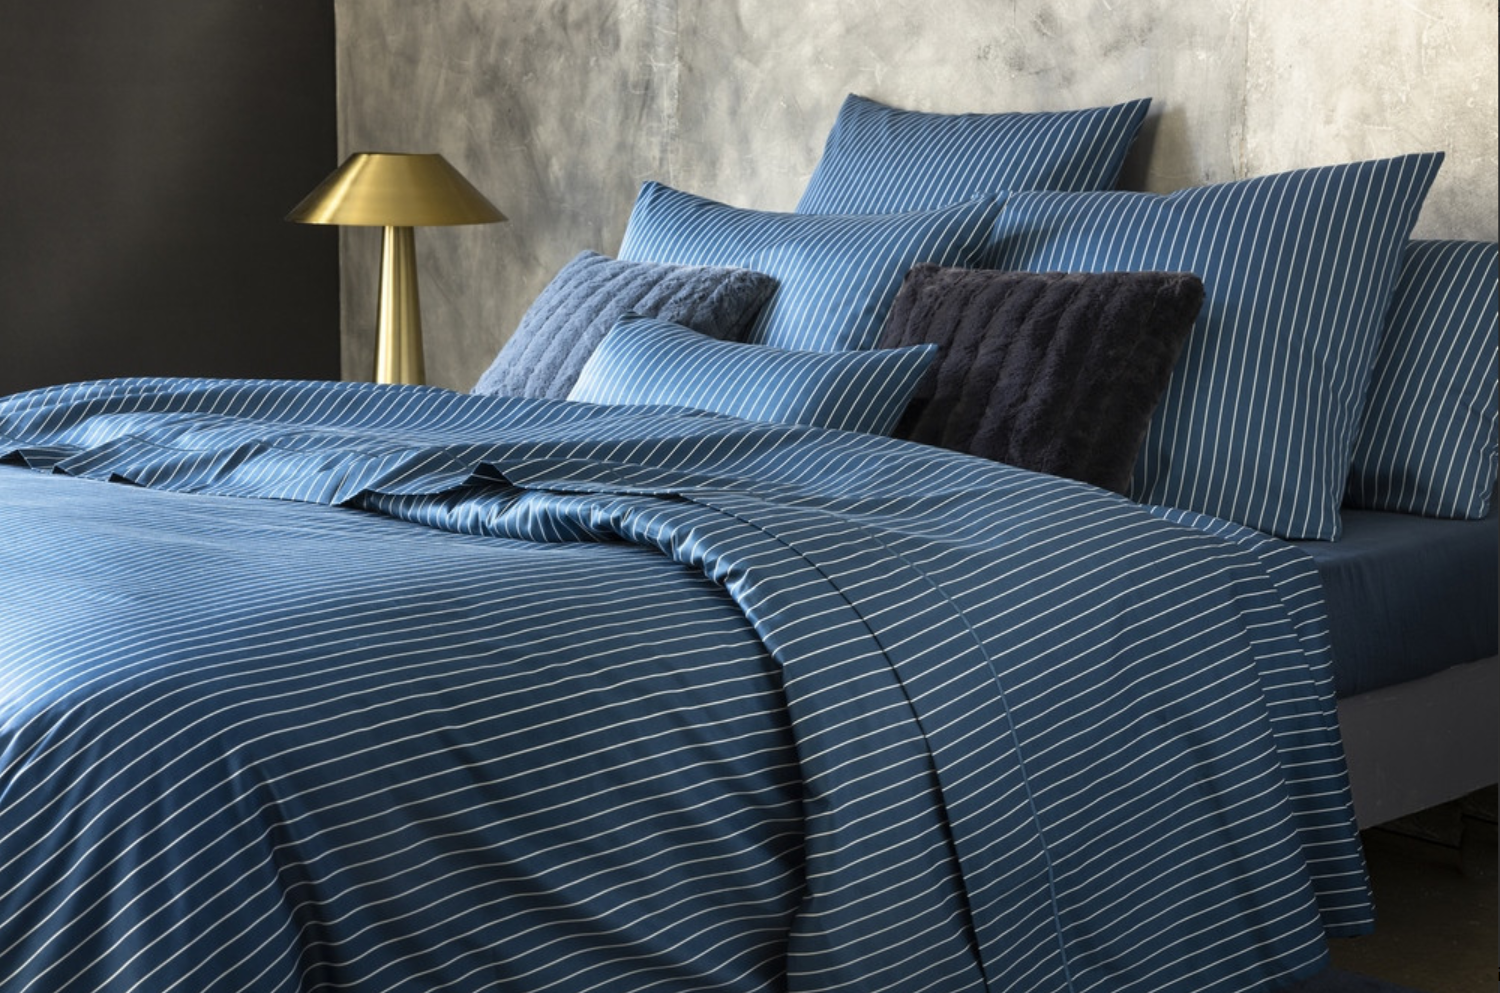 Parure de lit bleue avec rayures blanches aux dimensions 140x200 cm